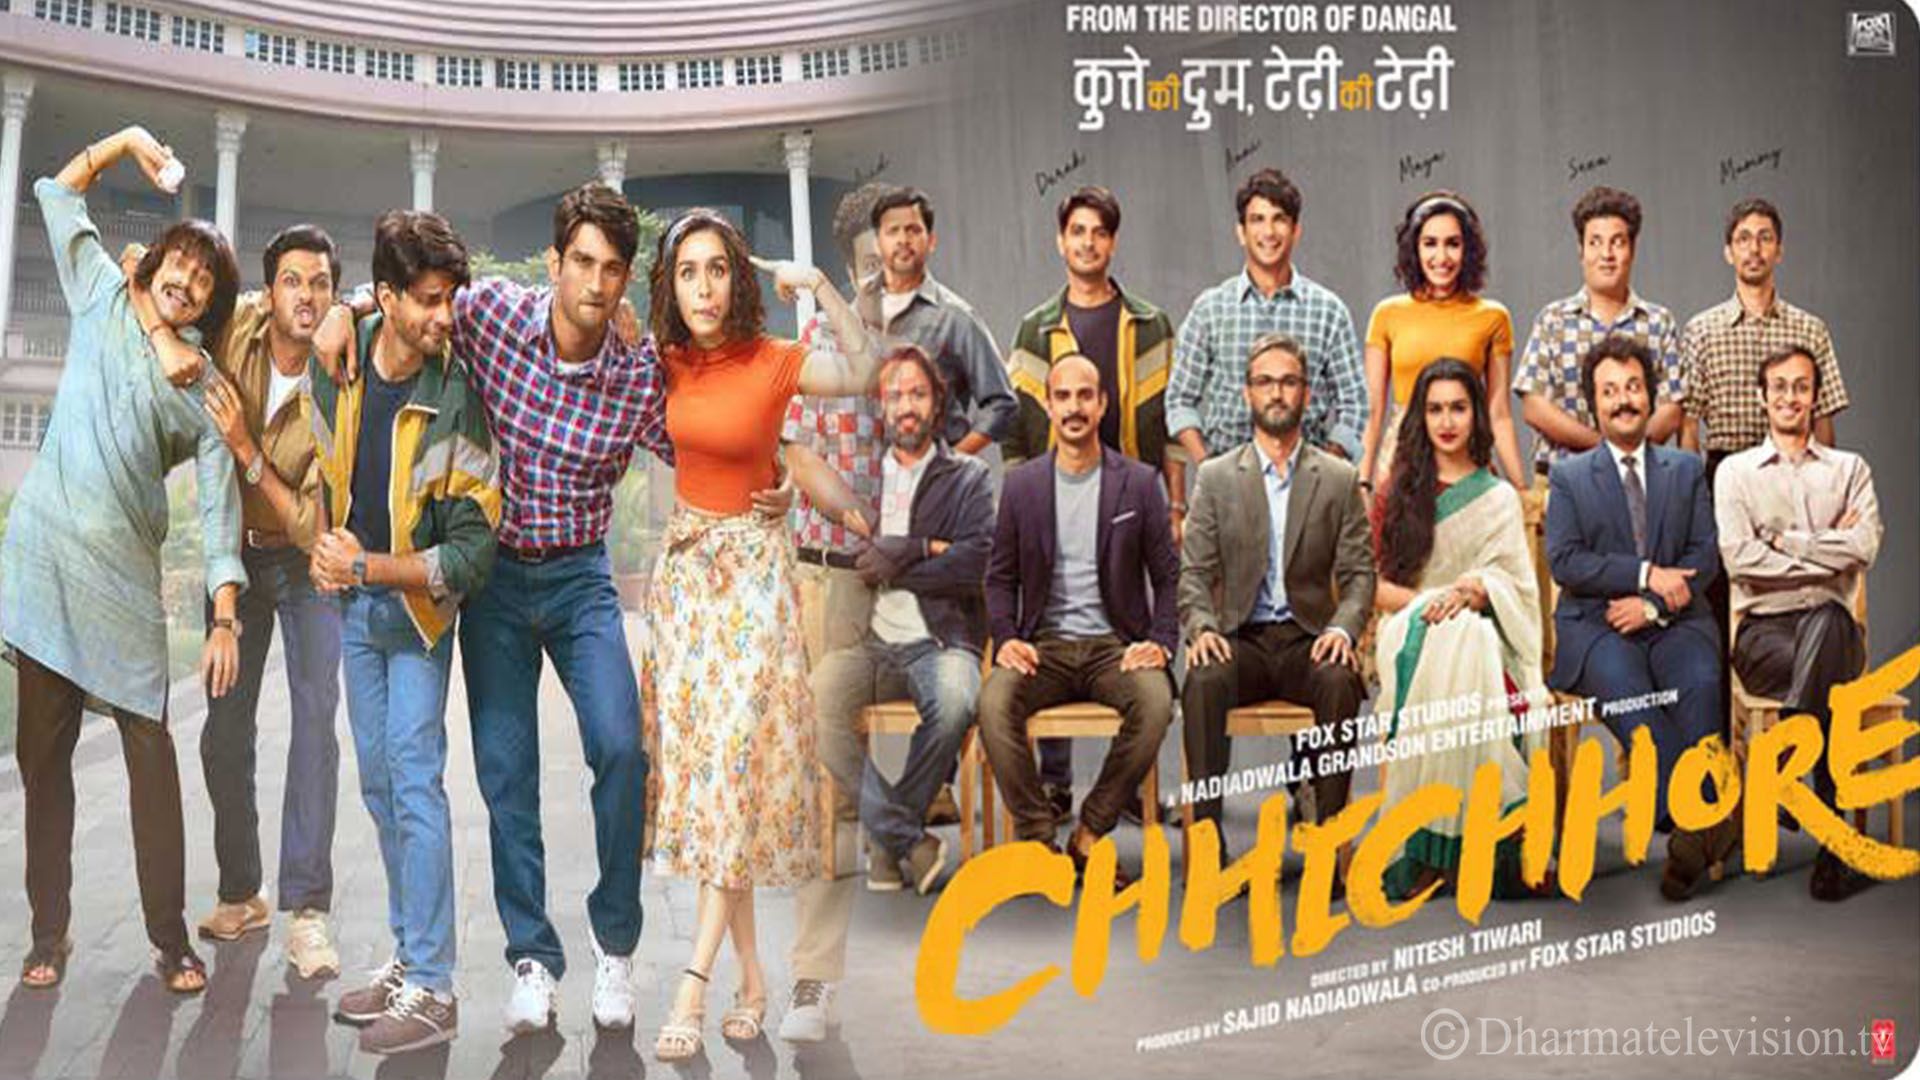 Sushant Singh Rajput's film 'Chhichore' declared the best film